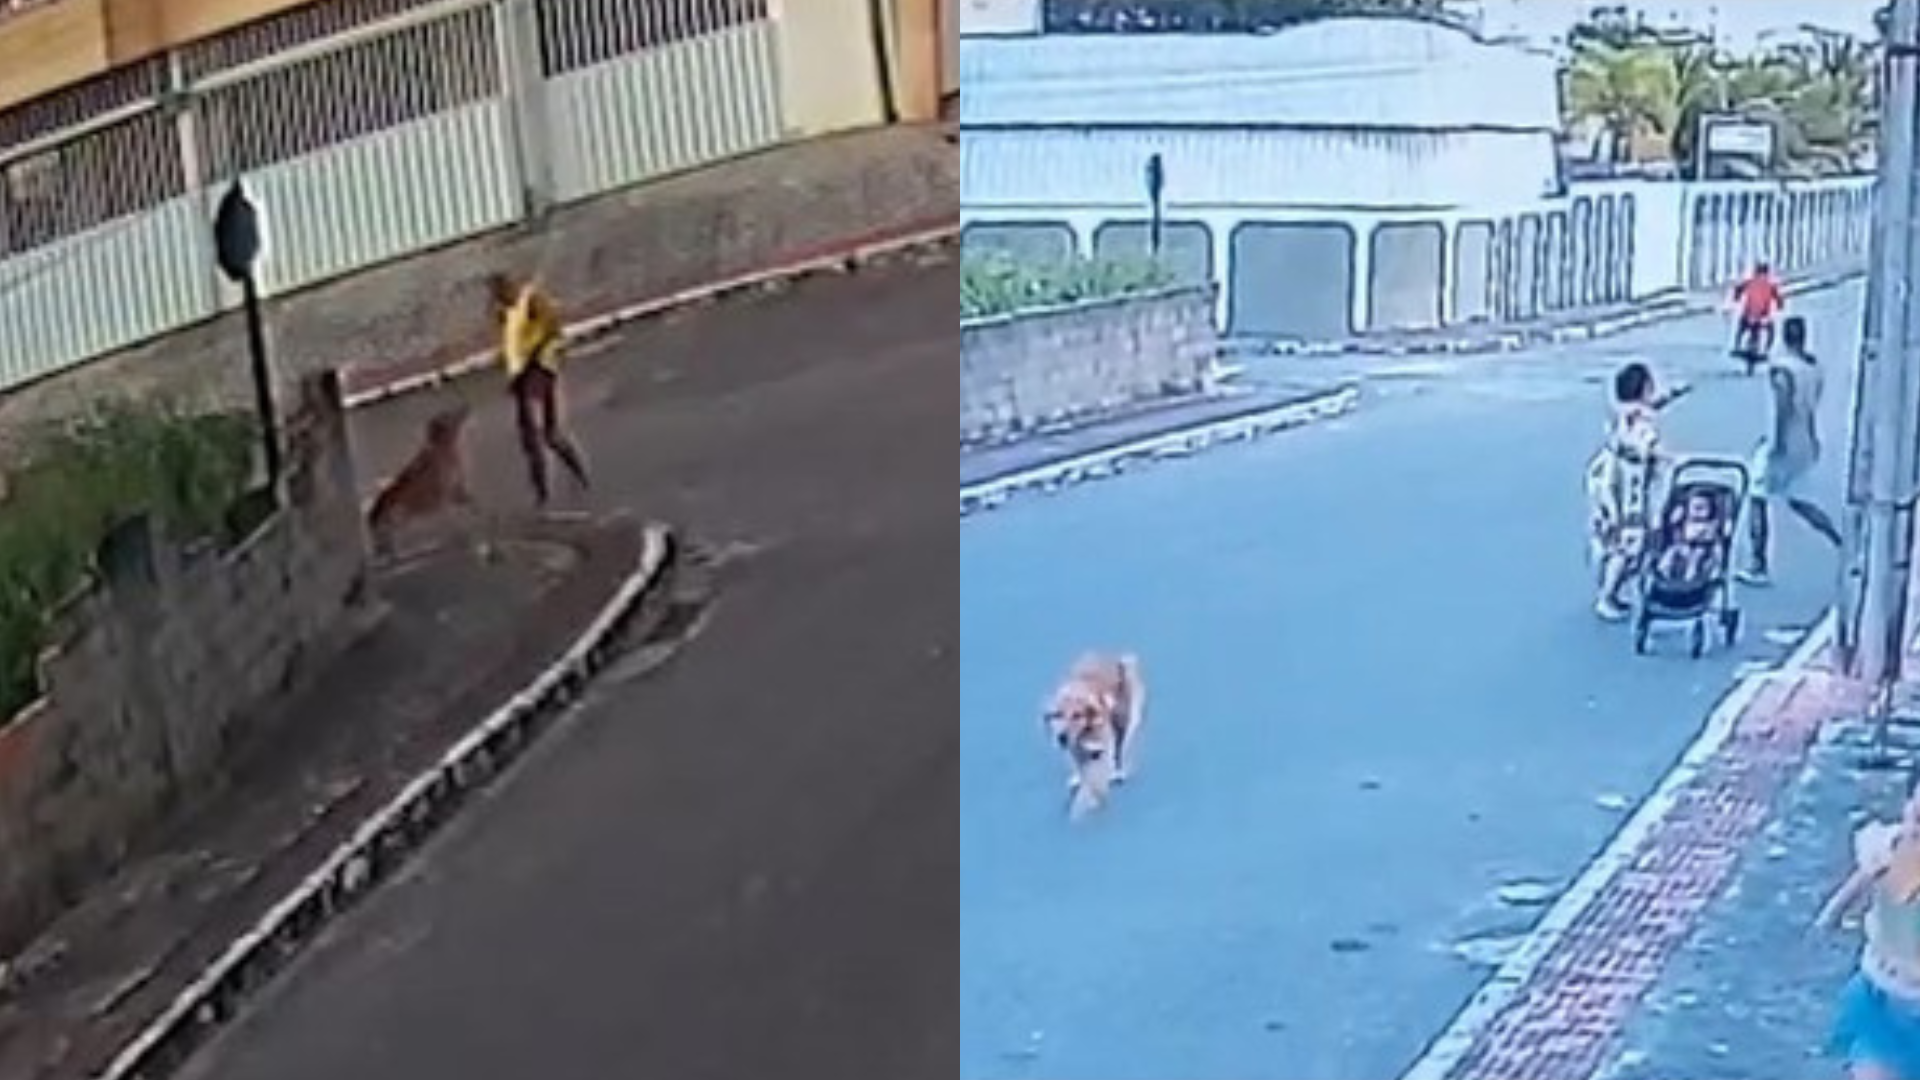 Vídeo mostra PM indo atrás de cachorro no ES antes de matá-lo: ‘Mirou para acertar’